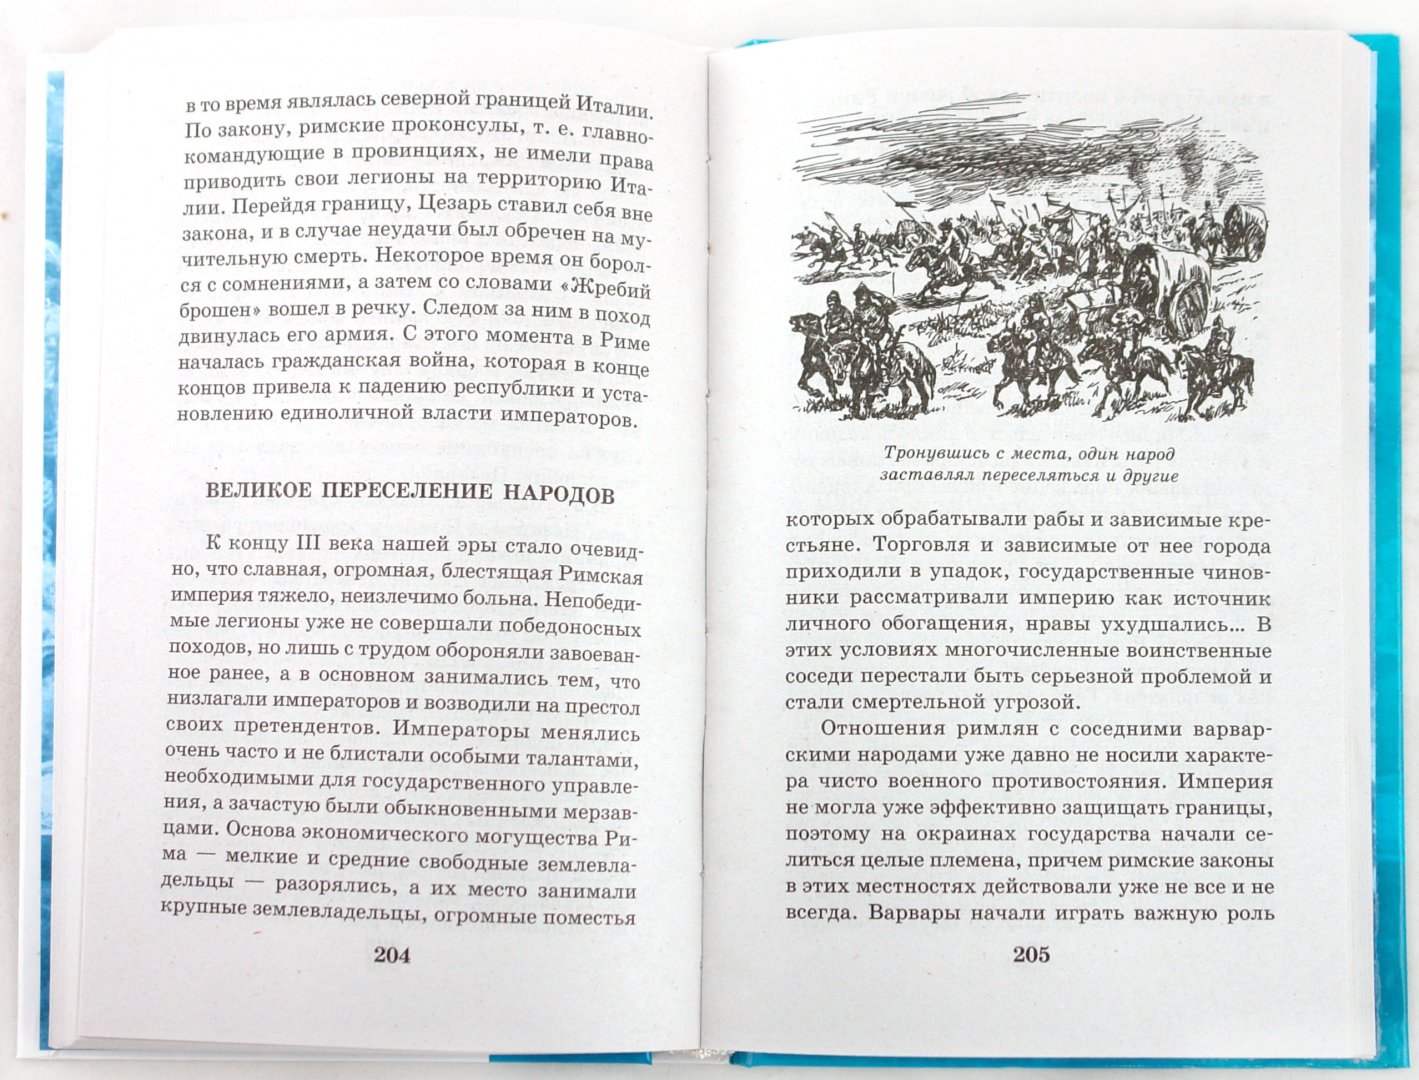 Иллюстрация 1 из 8 для Я познаю мир. 100 исторических событий - Павел Политов | Лабиринт - книги. Источник: Лабиринт